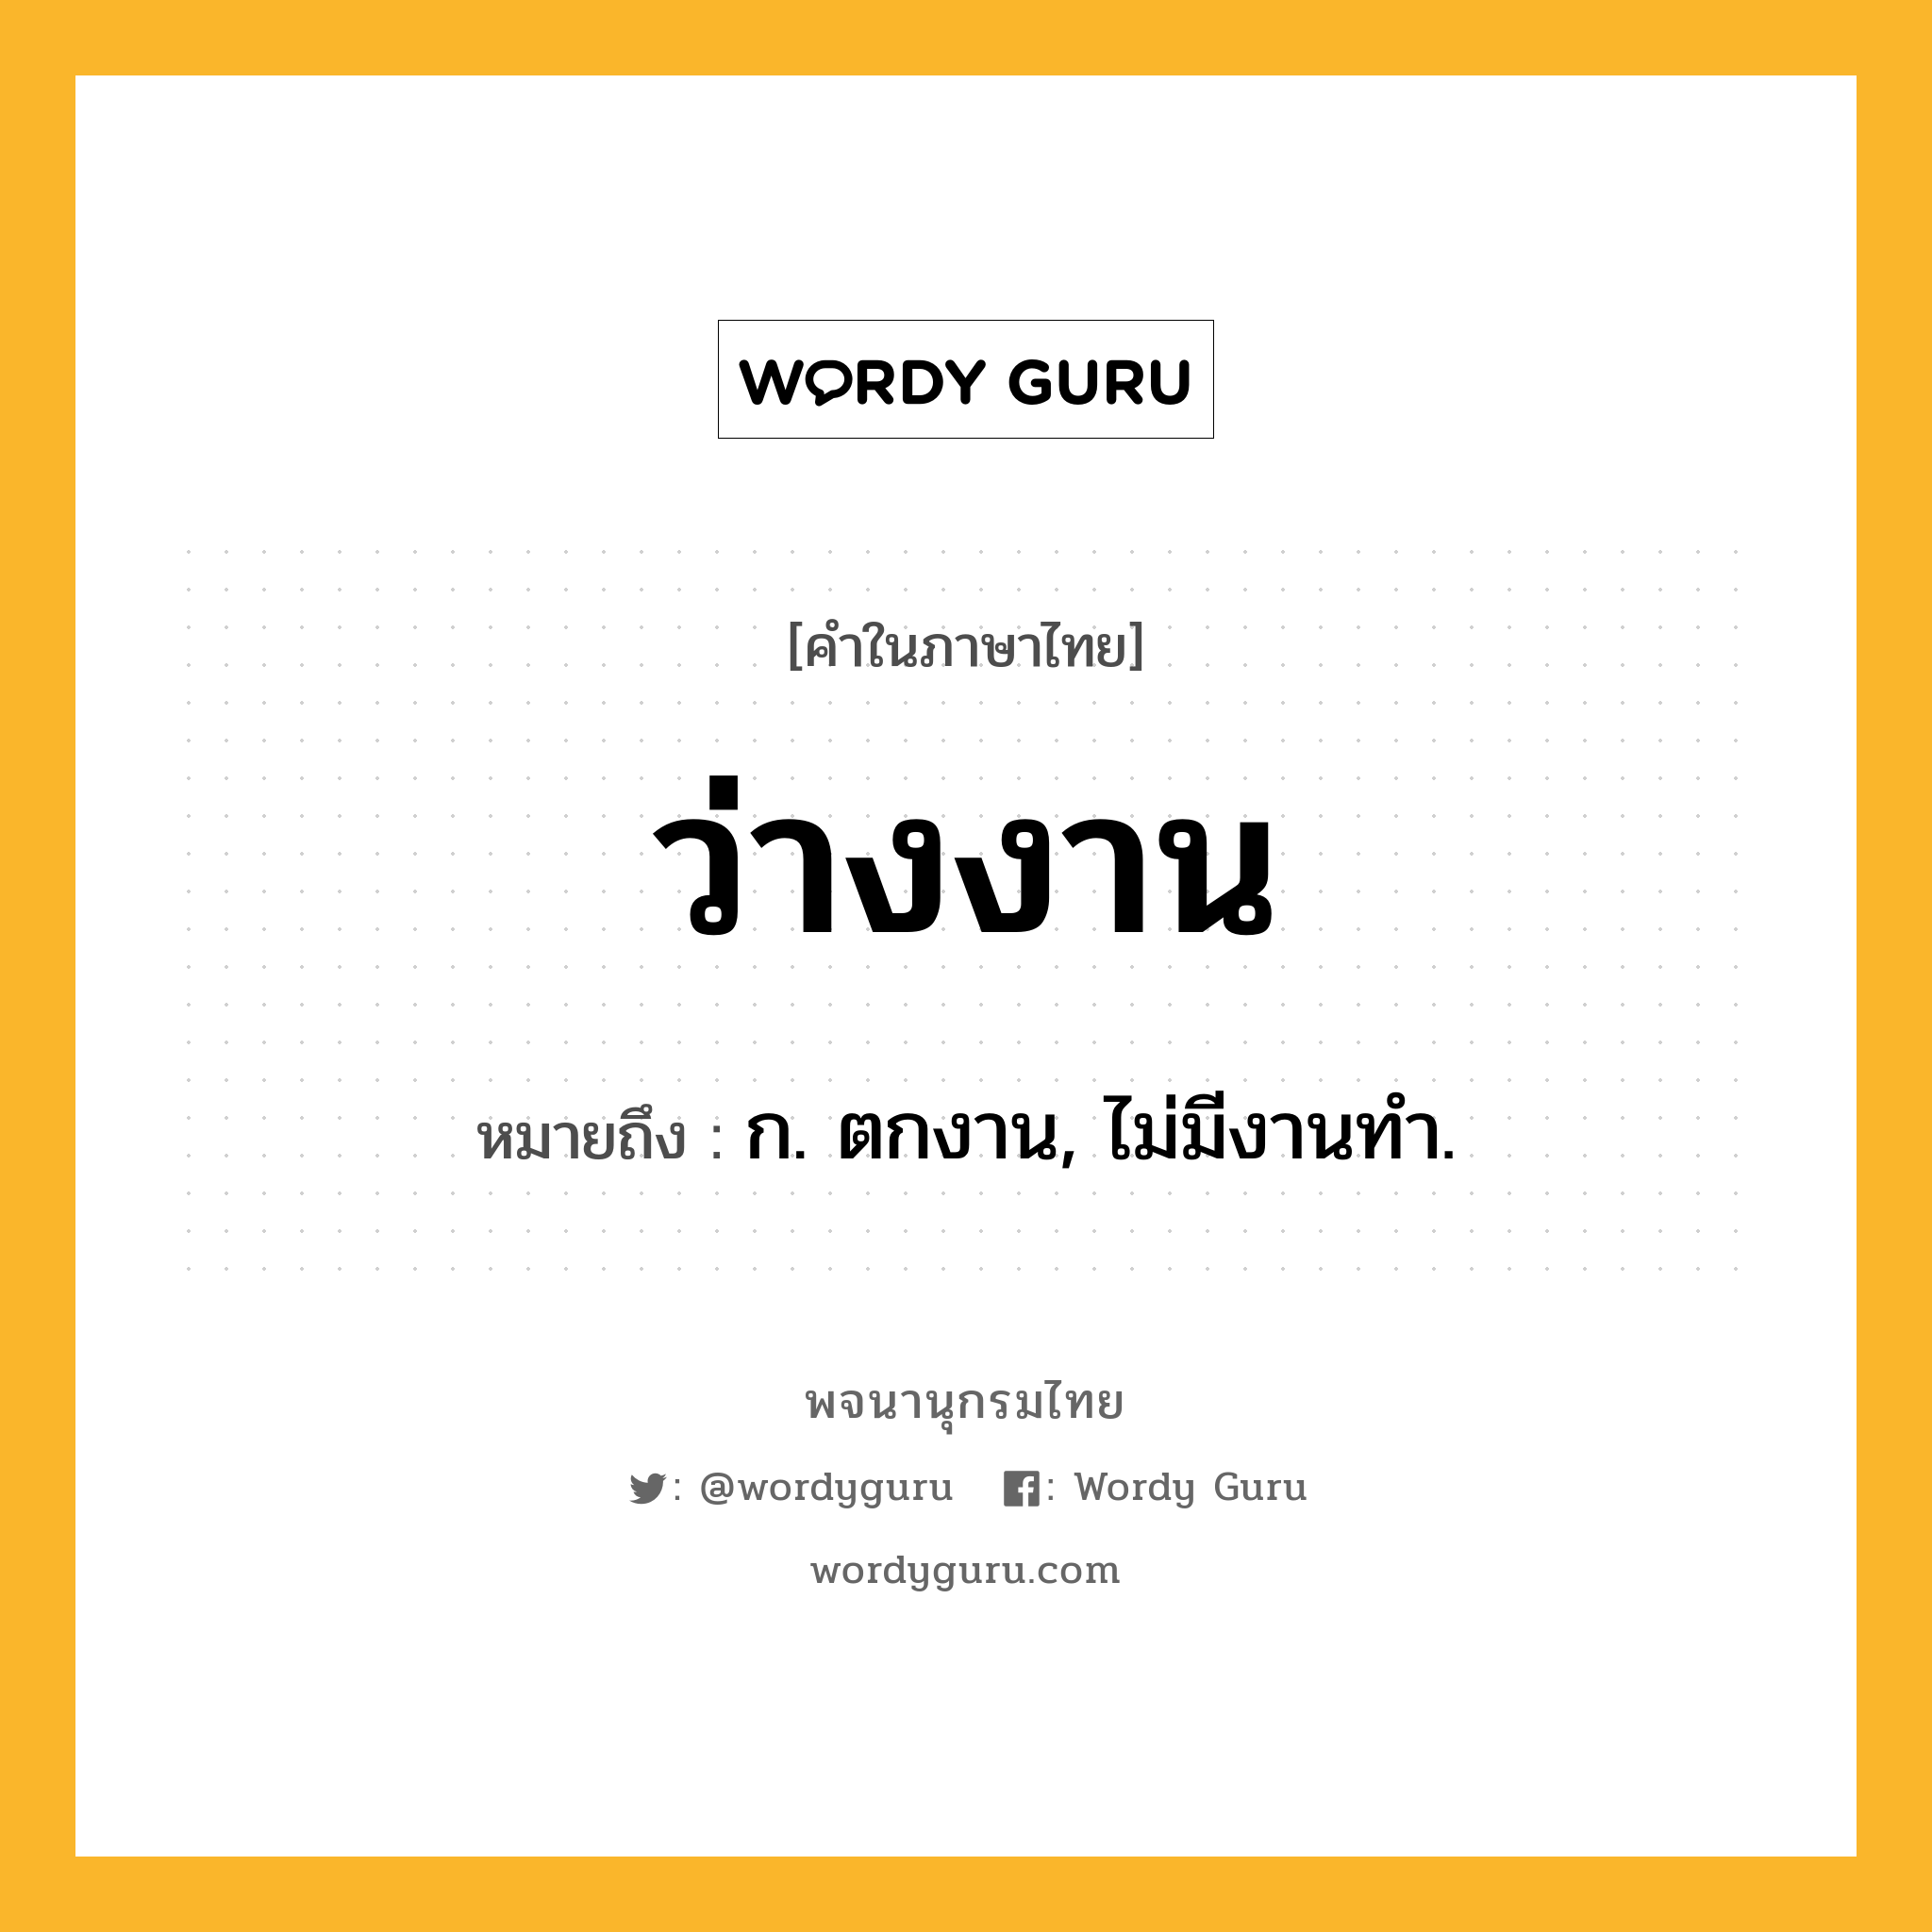 ว่างงาน ความหมาย หมายถึงอะไร?, คำในภาษาไทย ว่างงาน หมายถึง ก. ตกงาน, ไม่มีงานทํา.